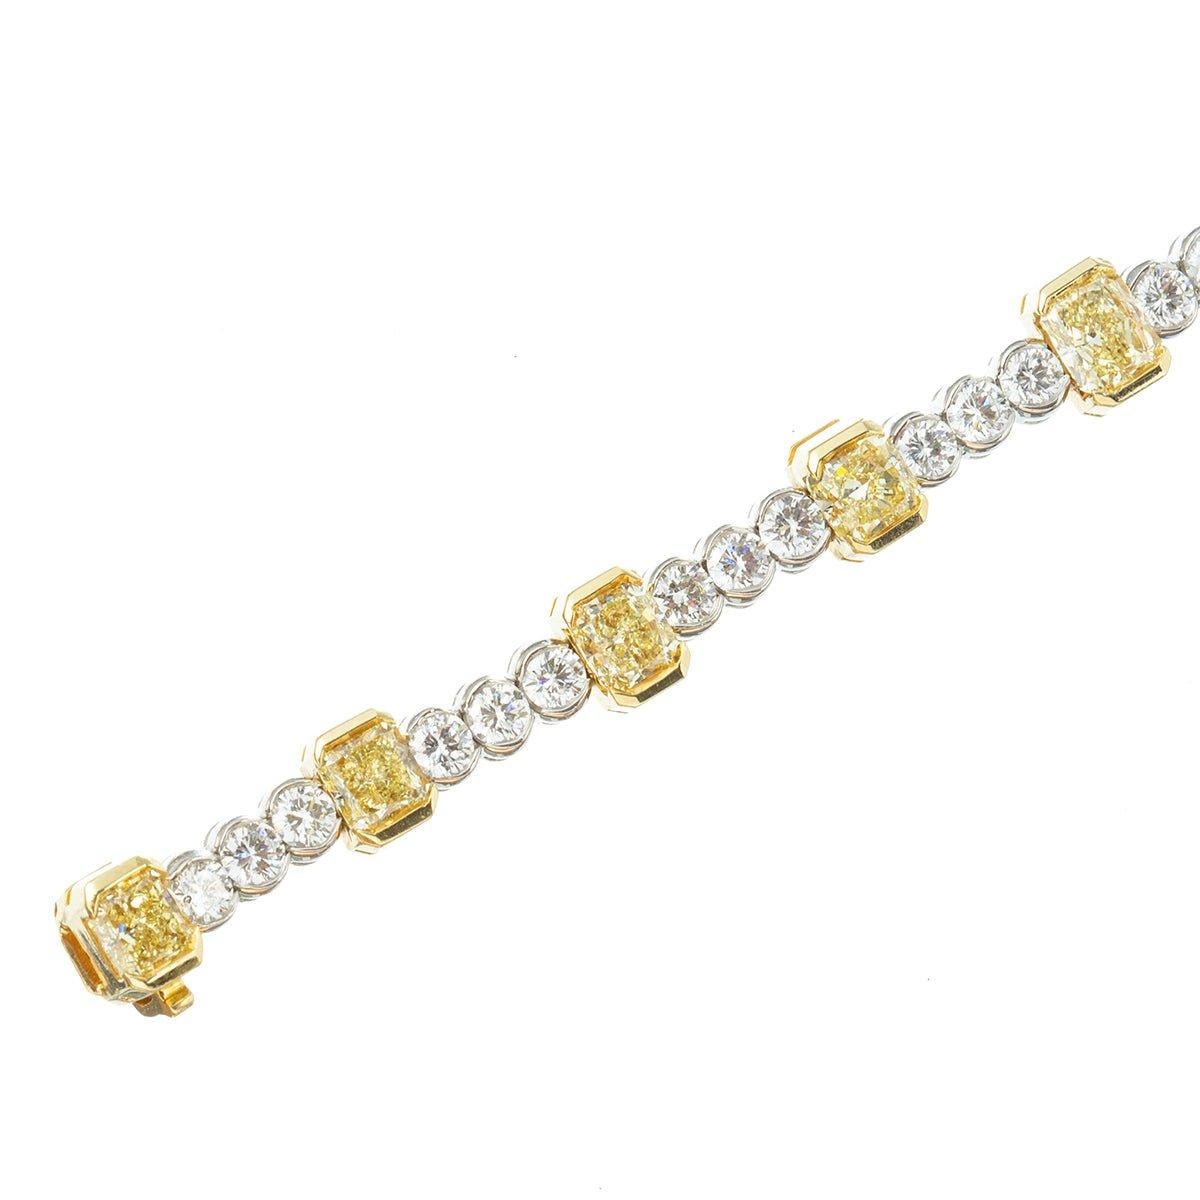 Armband mit gelben und weißen Diamanten in Lünettenfassung, mit größeren gelben Diamanten im Strahlenschliff, die jeweils durch drei kleinere runde, nahezu farblose Diamanten im Brillantschliff getrennt sind, in einer Fassung aus poliertem Platin